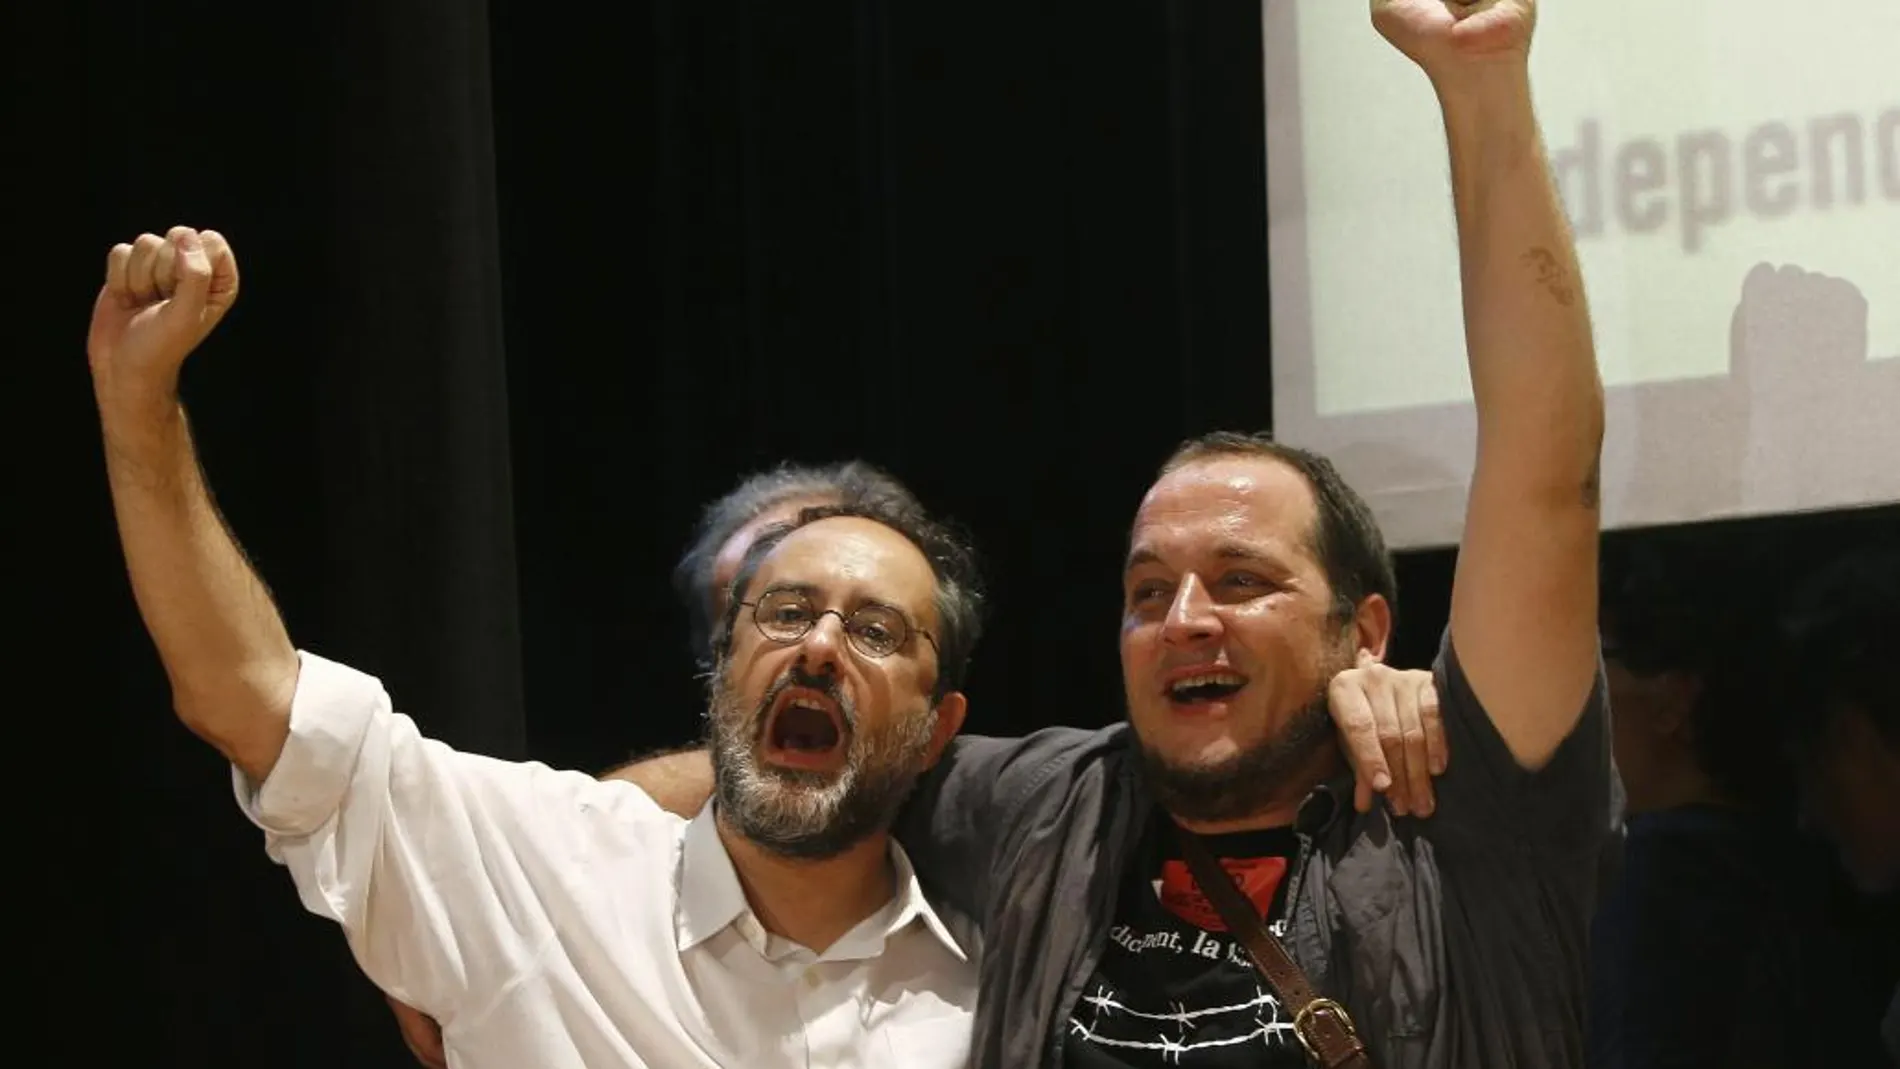 El candidato de la CUP, Antonio Baños (i) y el lider de la formación independentista, David Fernández, durante la celebración en su sede de los resultados obtenidos en las elecciones catalanas. EFE / Quique García